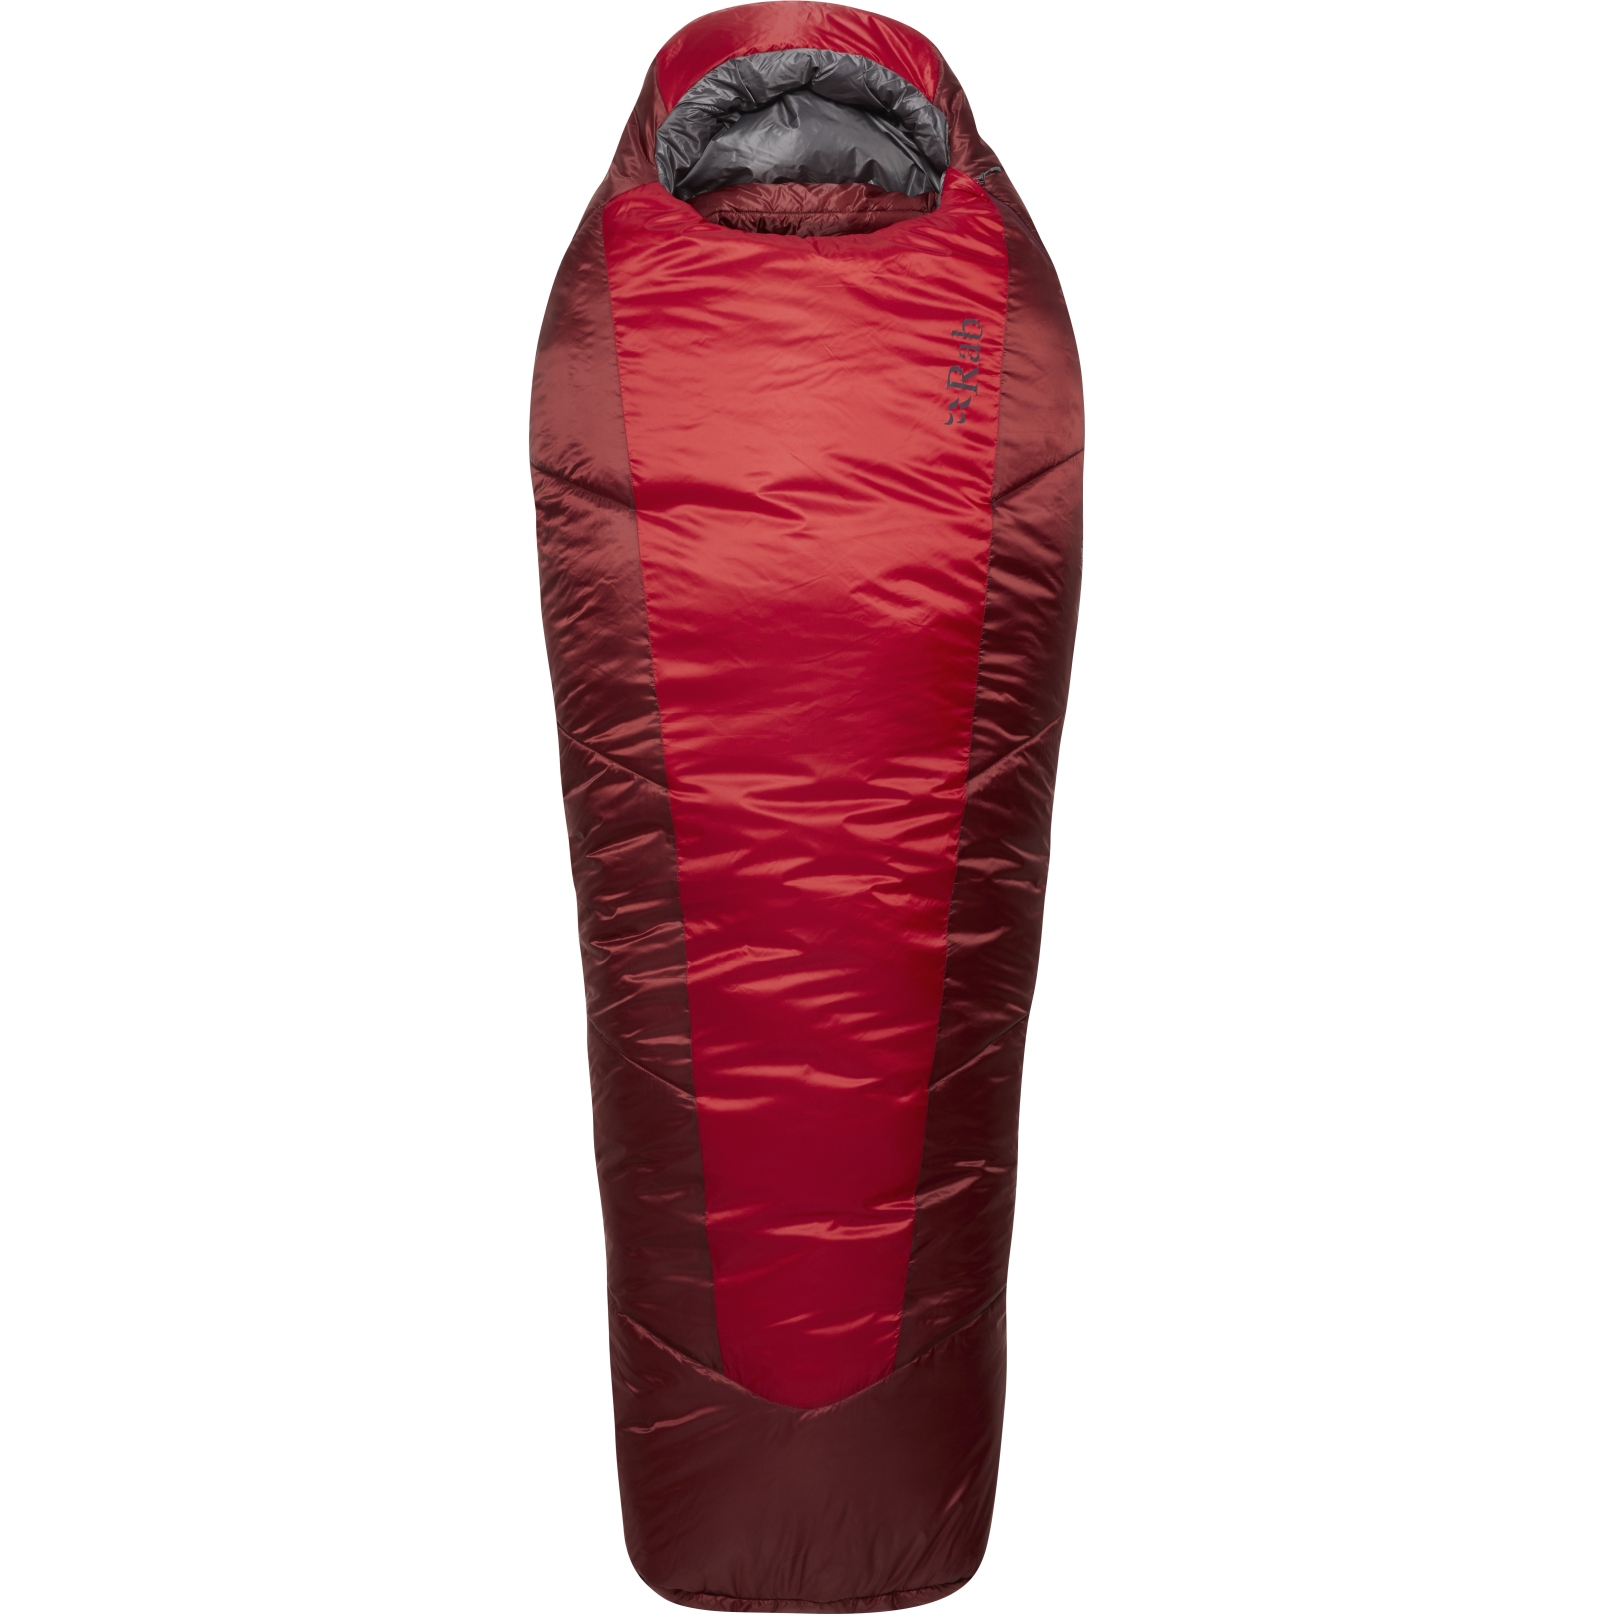 Produktbild von Rab Solar Eco 3 Schlafsack Damen - RV links - acsent red